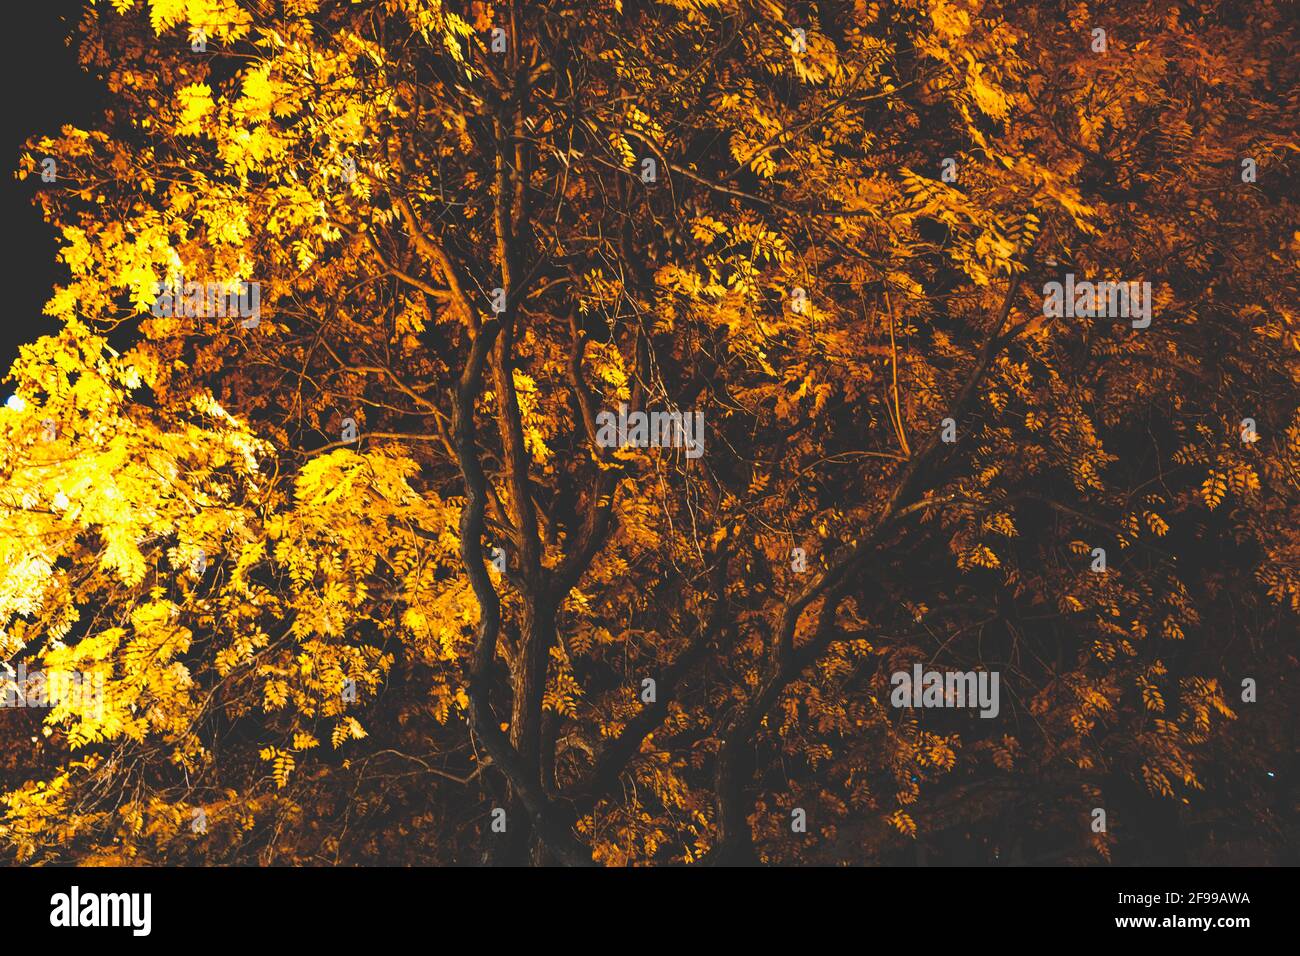 Di notte - chiaro e scuro - alberi e foglie in autunno, illuminato Foto Stock